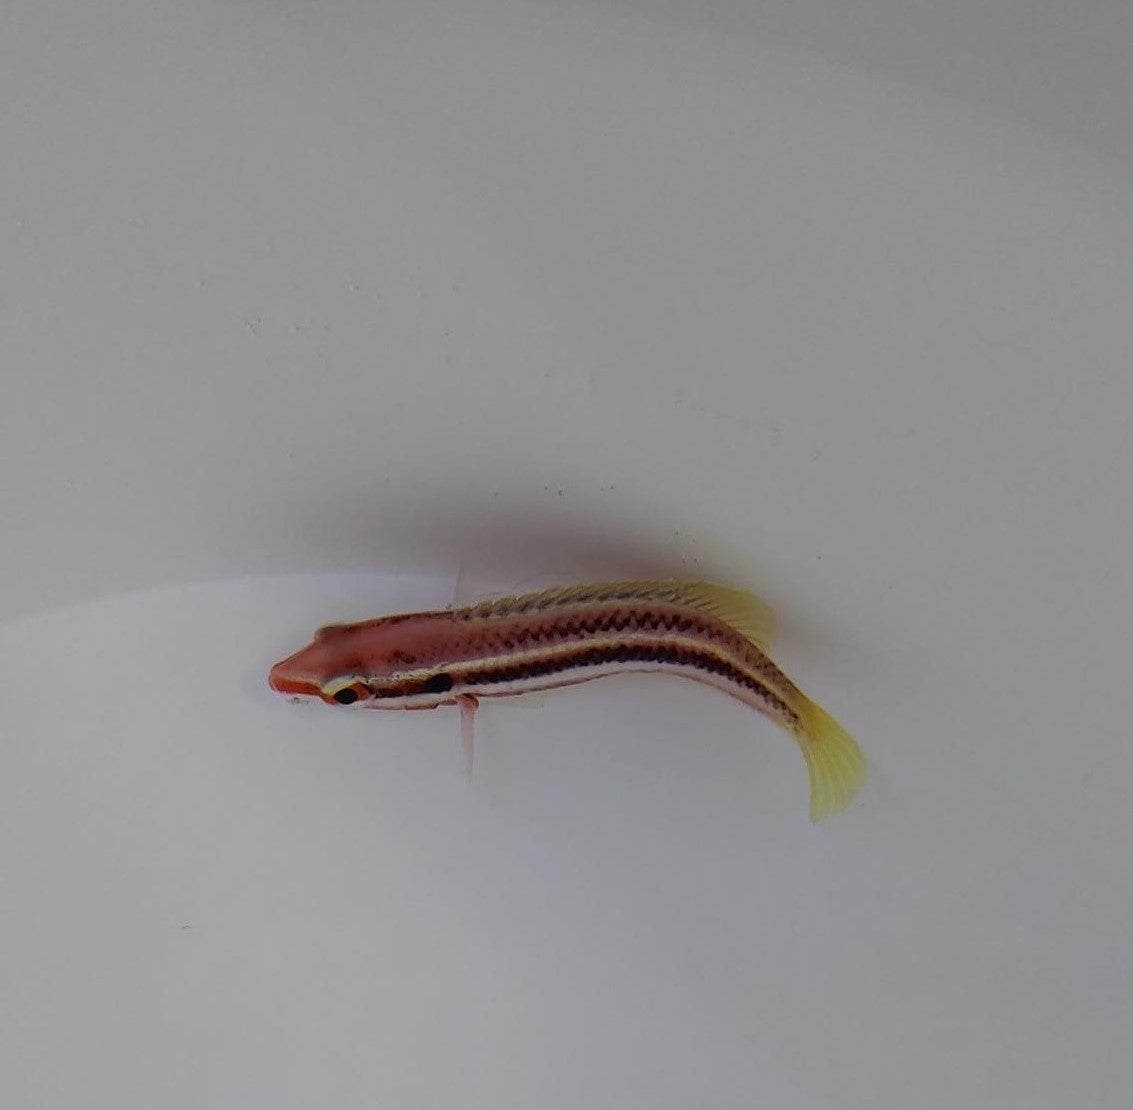 Bodianus izuensis - Striped Pigfish